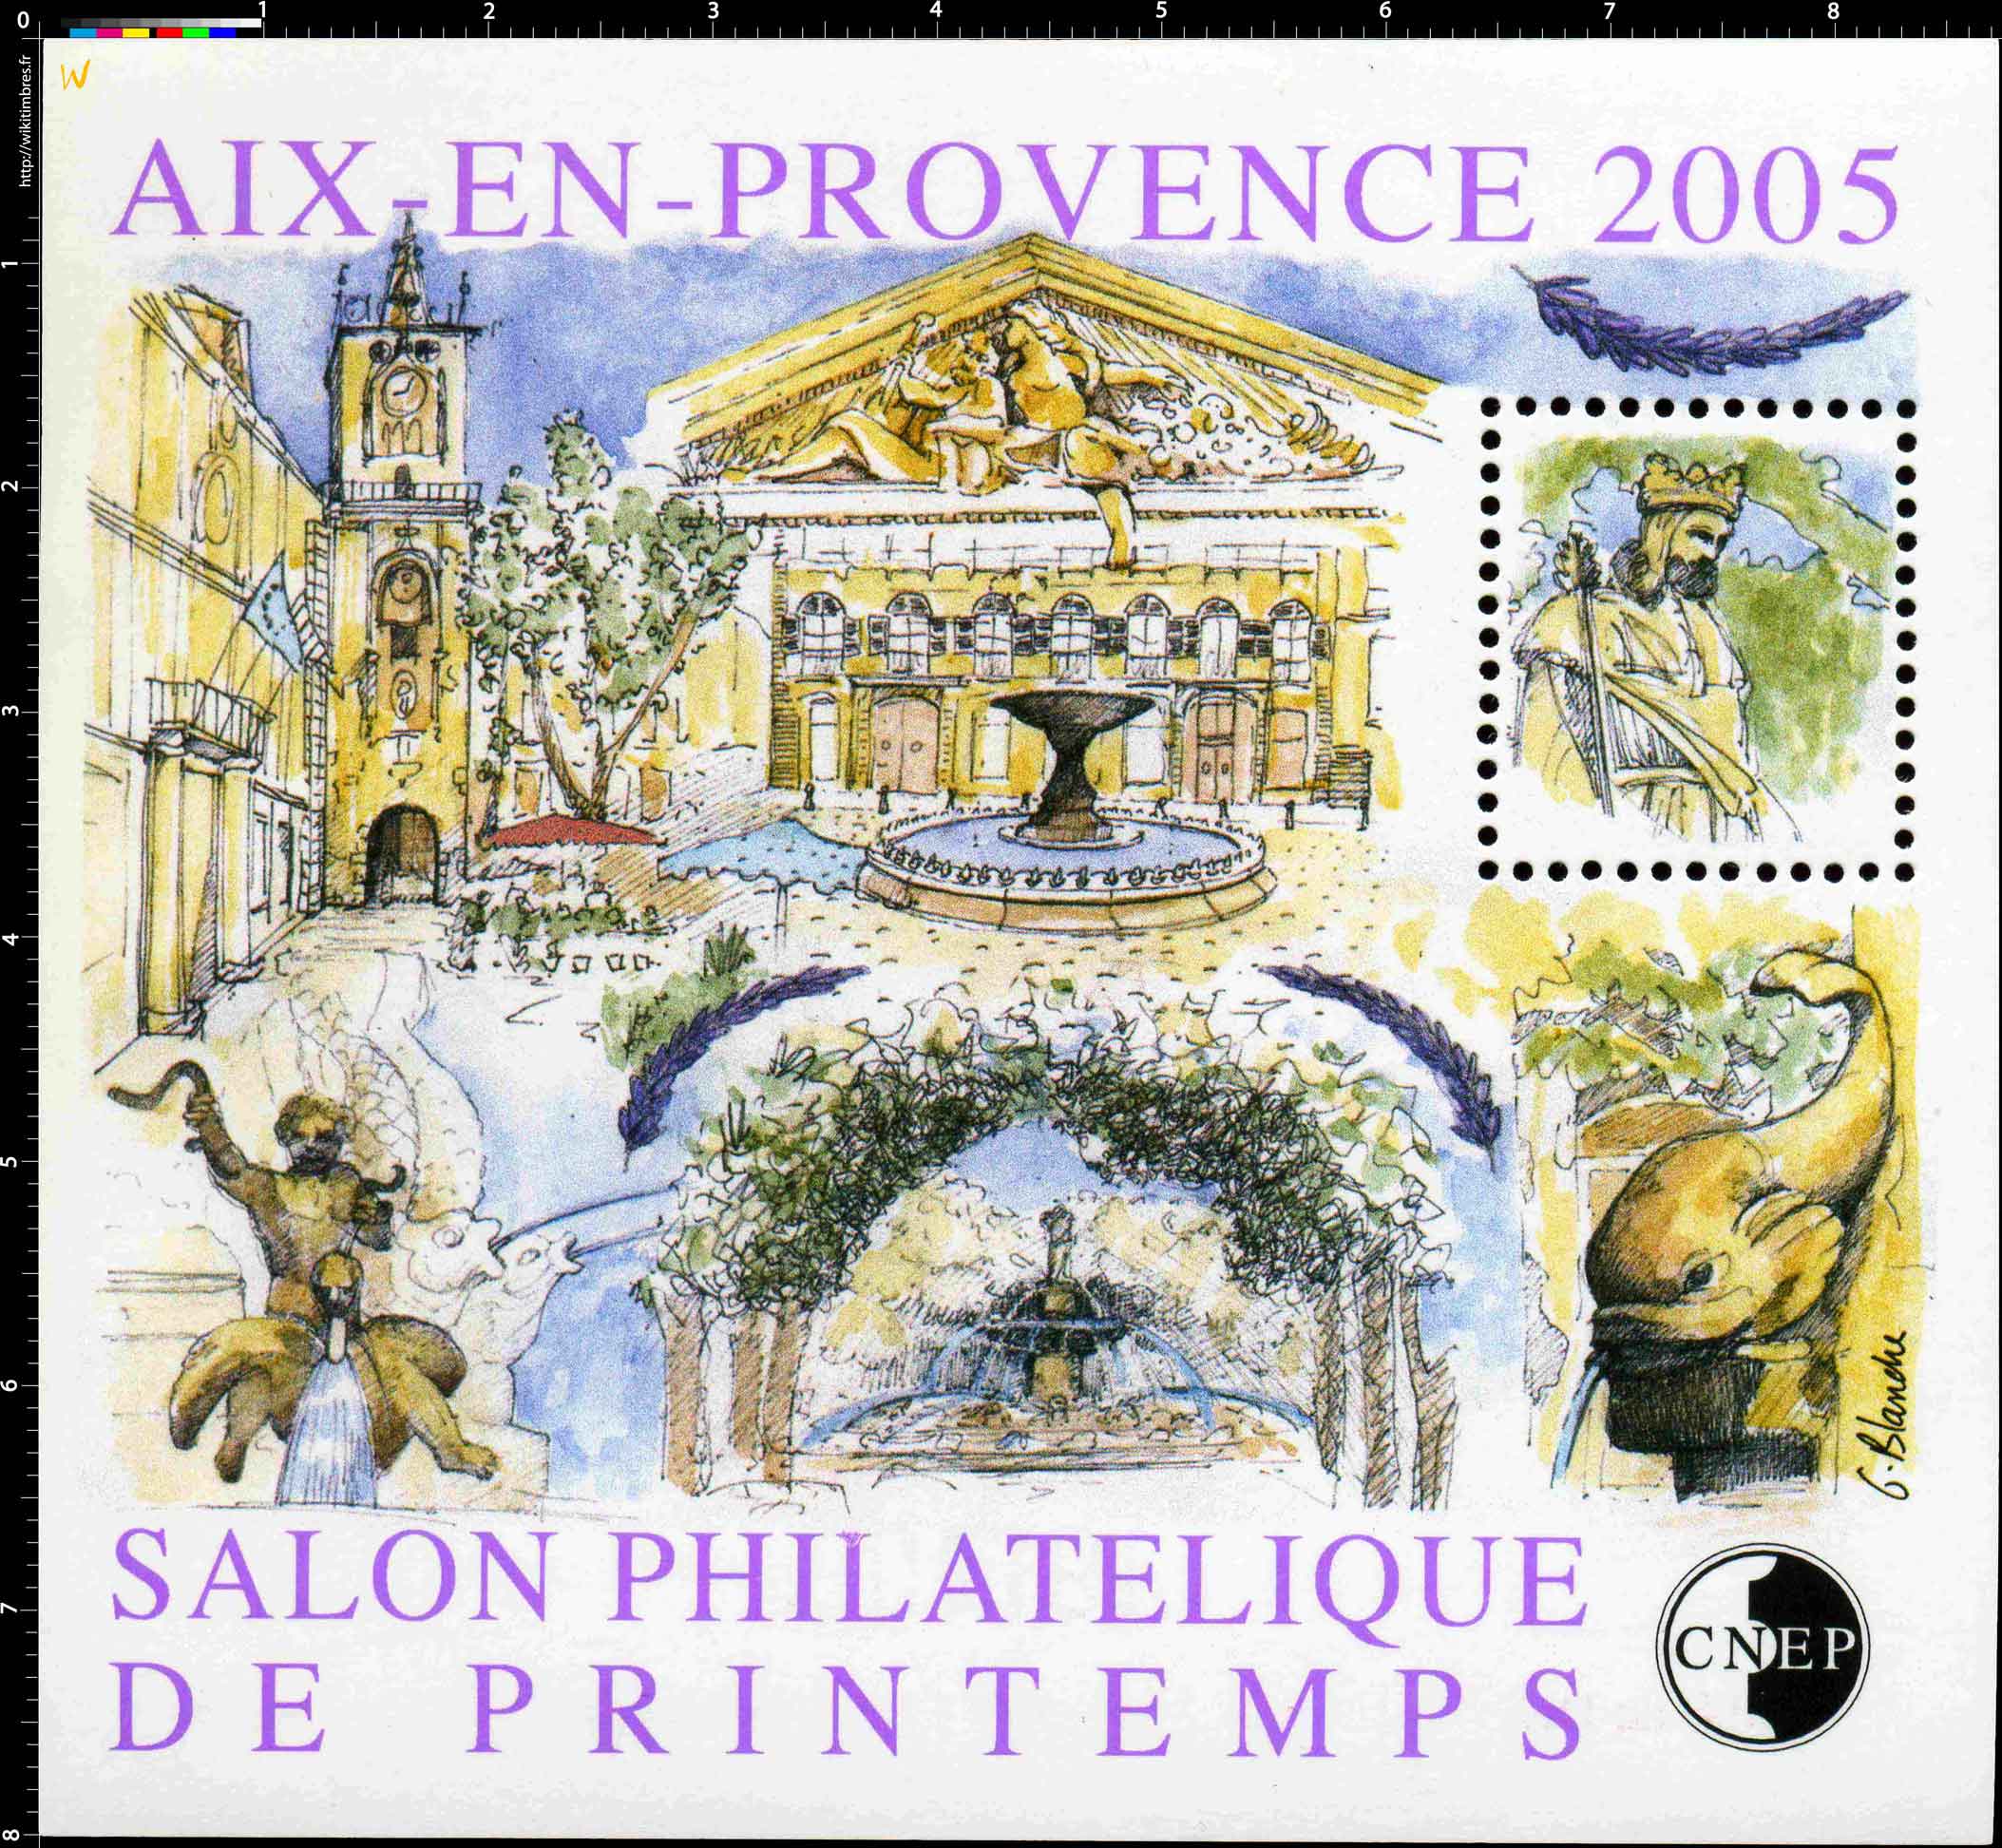 2005 Salon philatélique de printemps Aix-en-Provence CNEP